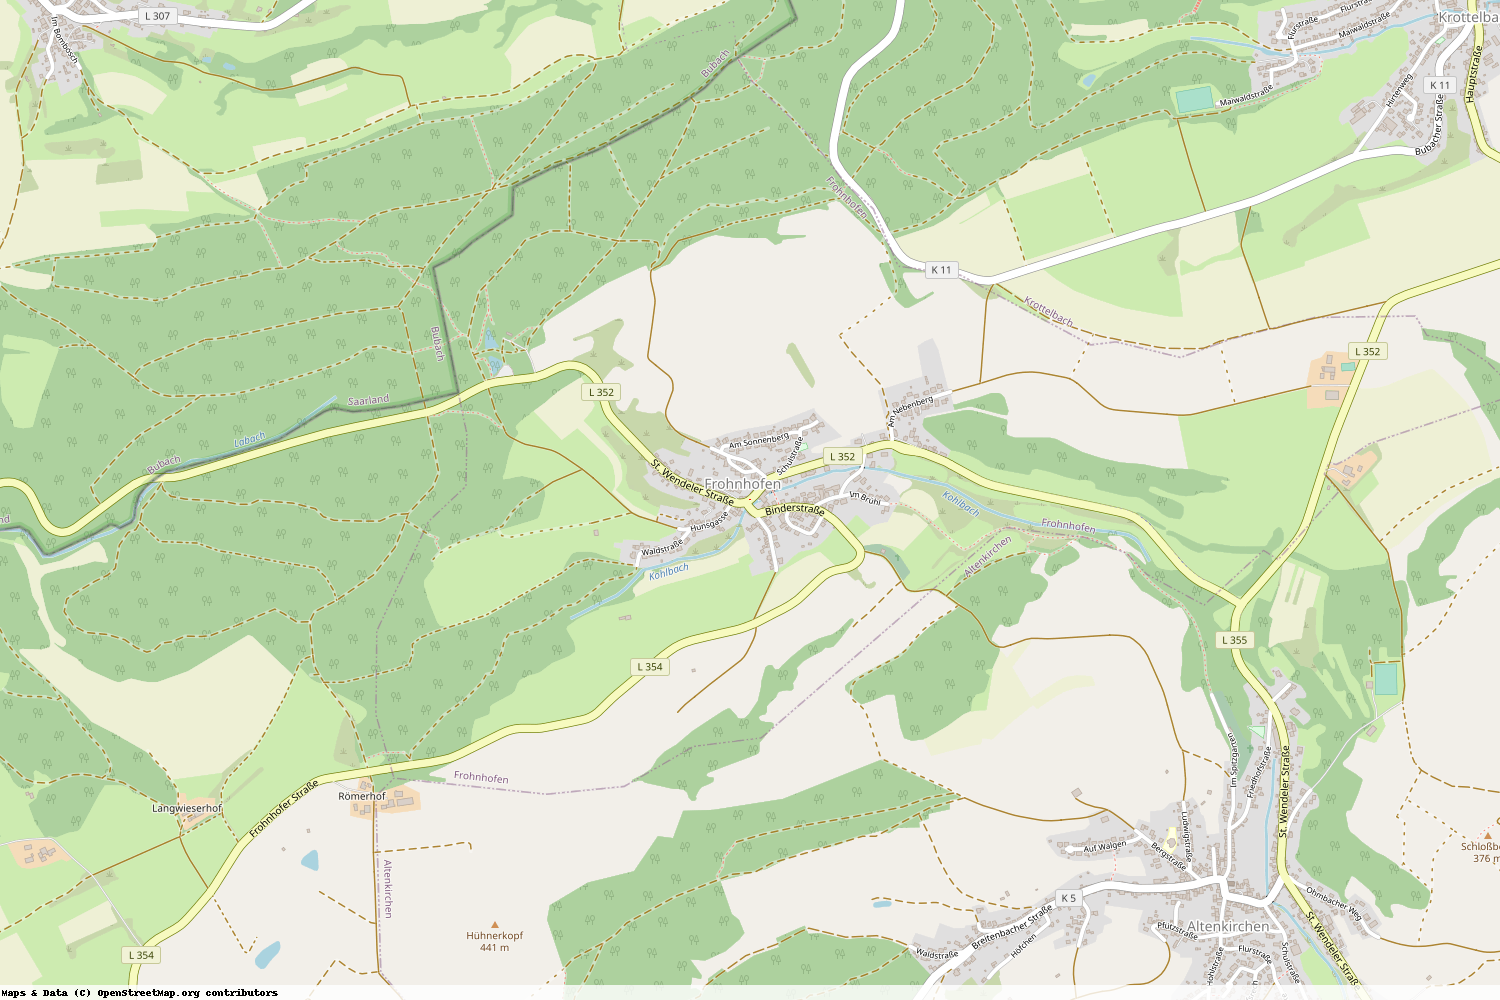 Ist gerade Stromausfall in Rheinland-Pfalz - Kusel - Frohnhofen?